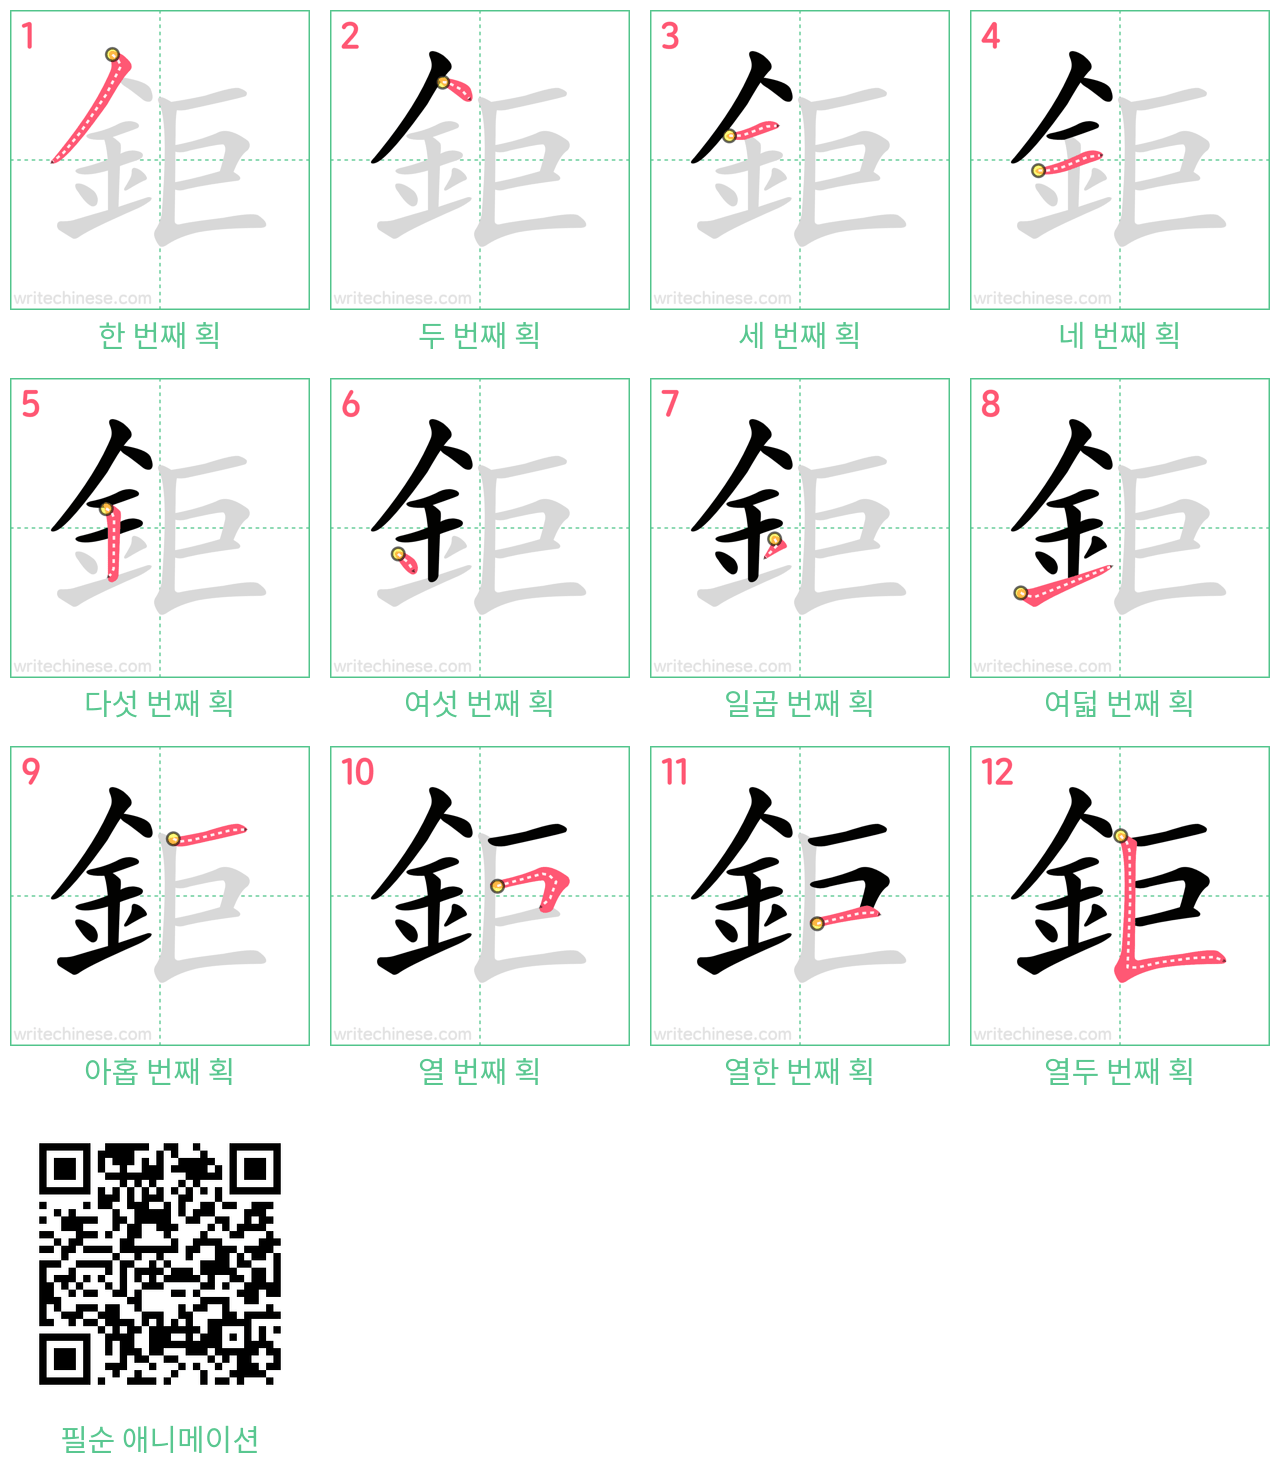 鉅 step-by-step stroke order diagrams